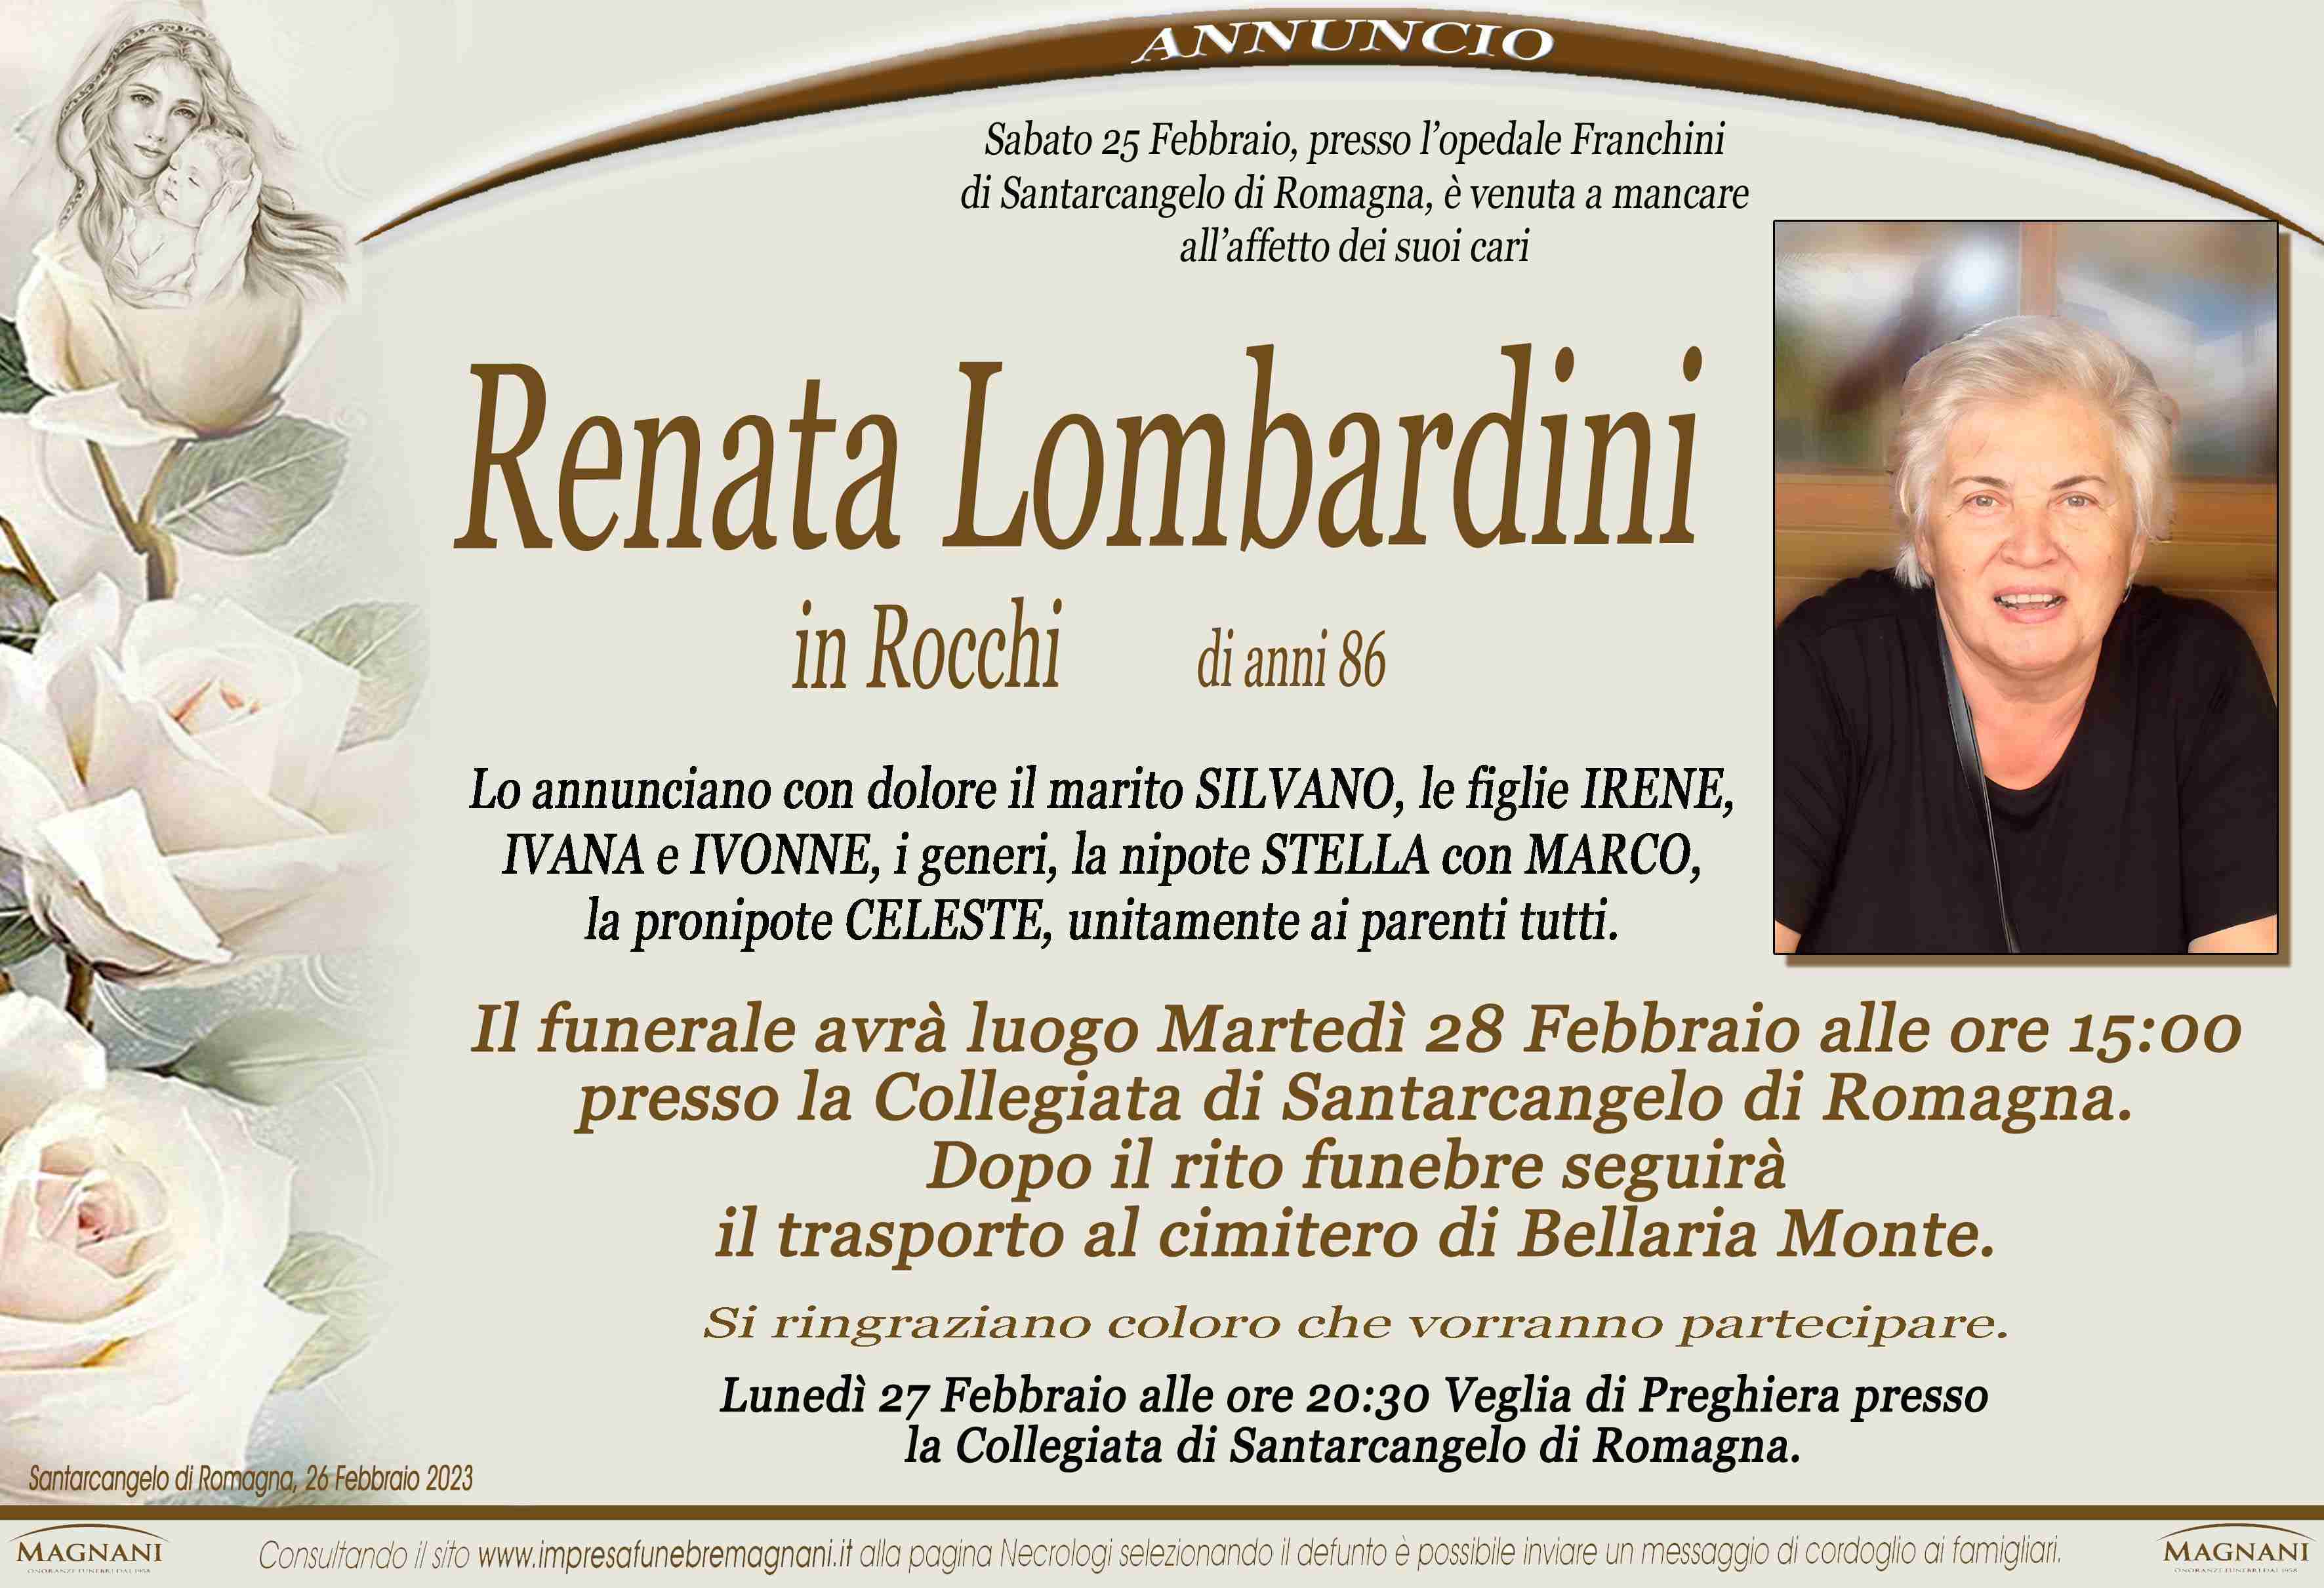 Renata Lombardini